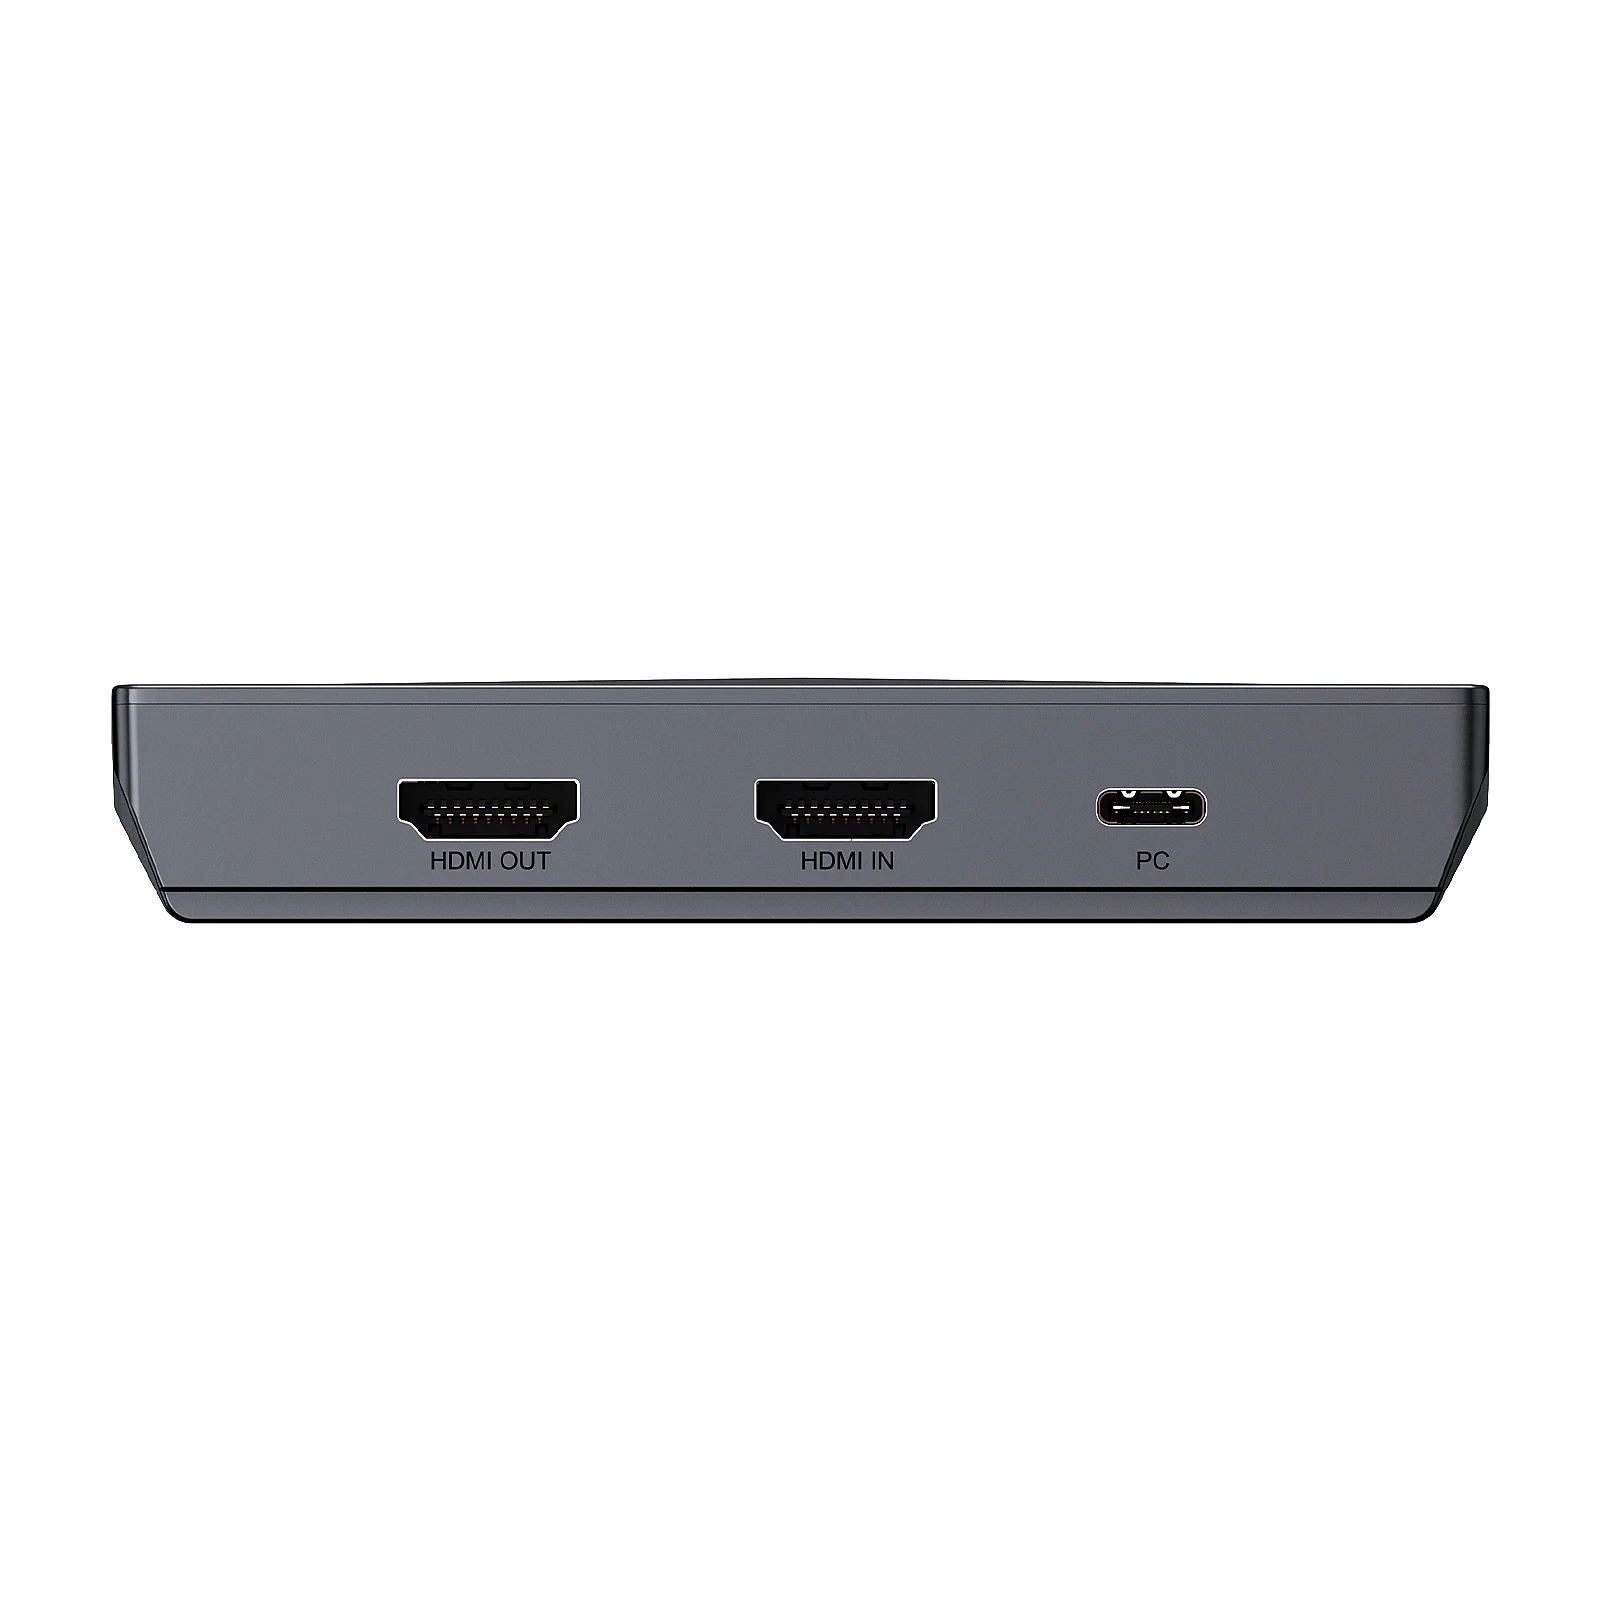 HD 4K USB 3,0 HDMI Видеозахват Запись Карточной игры с микрофоном В Прямом эфире для PS4 PS5 PC Видеокамеры DSLR Камеры Ezcap333 Изображение 5